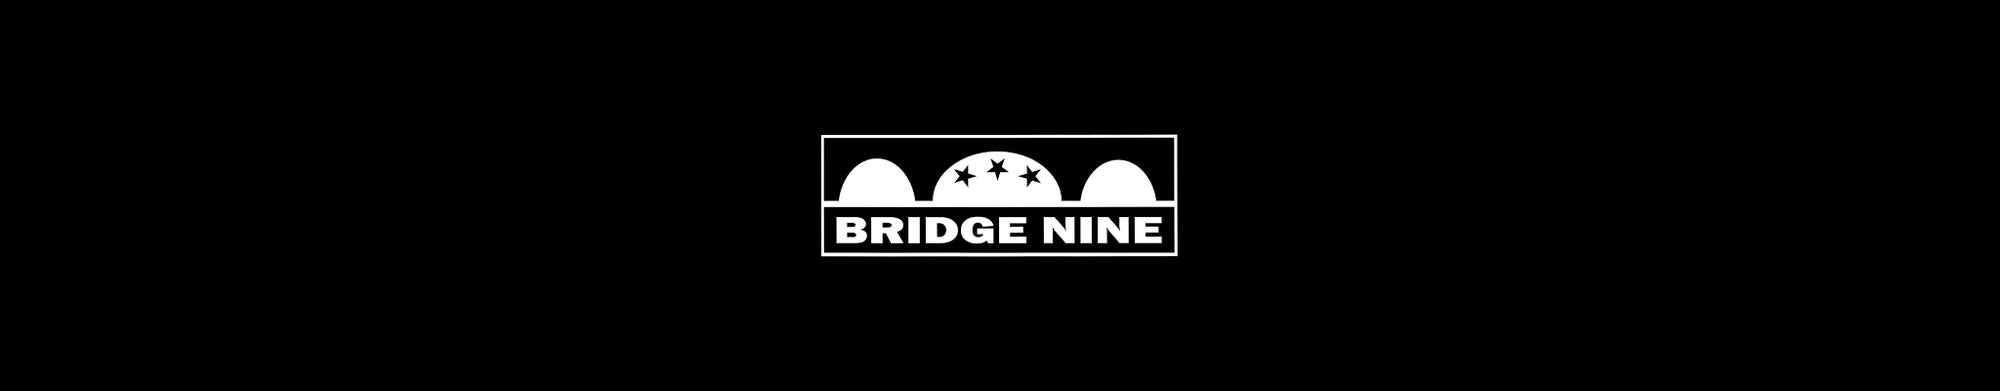 BRIDGE NINE RECORDS